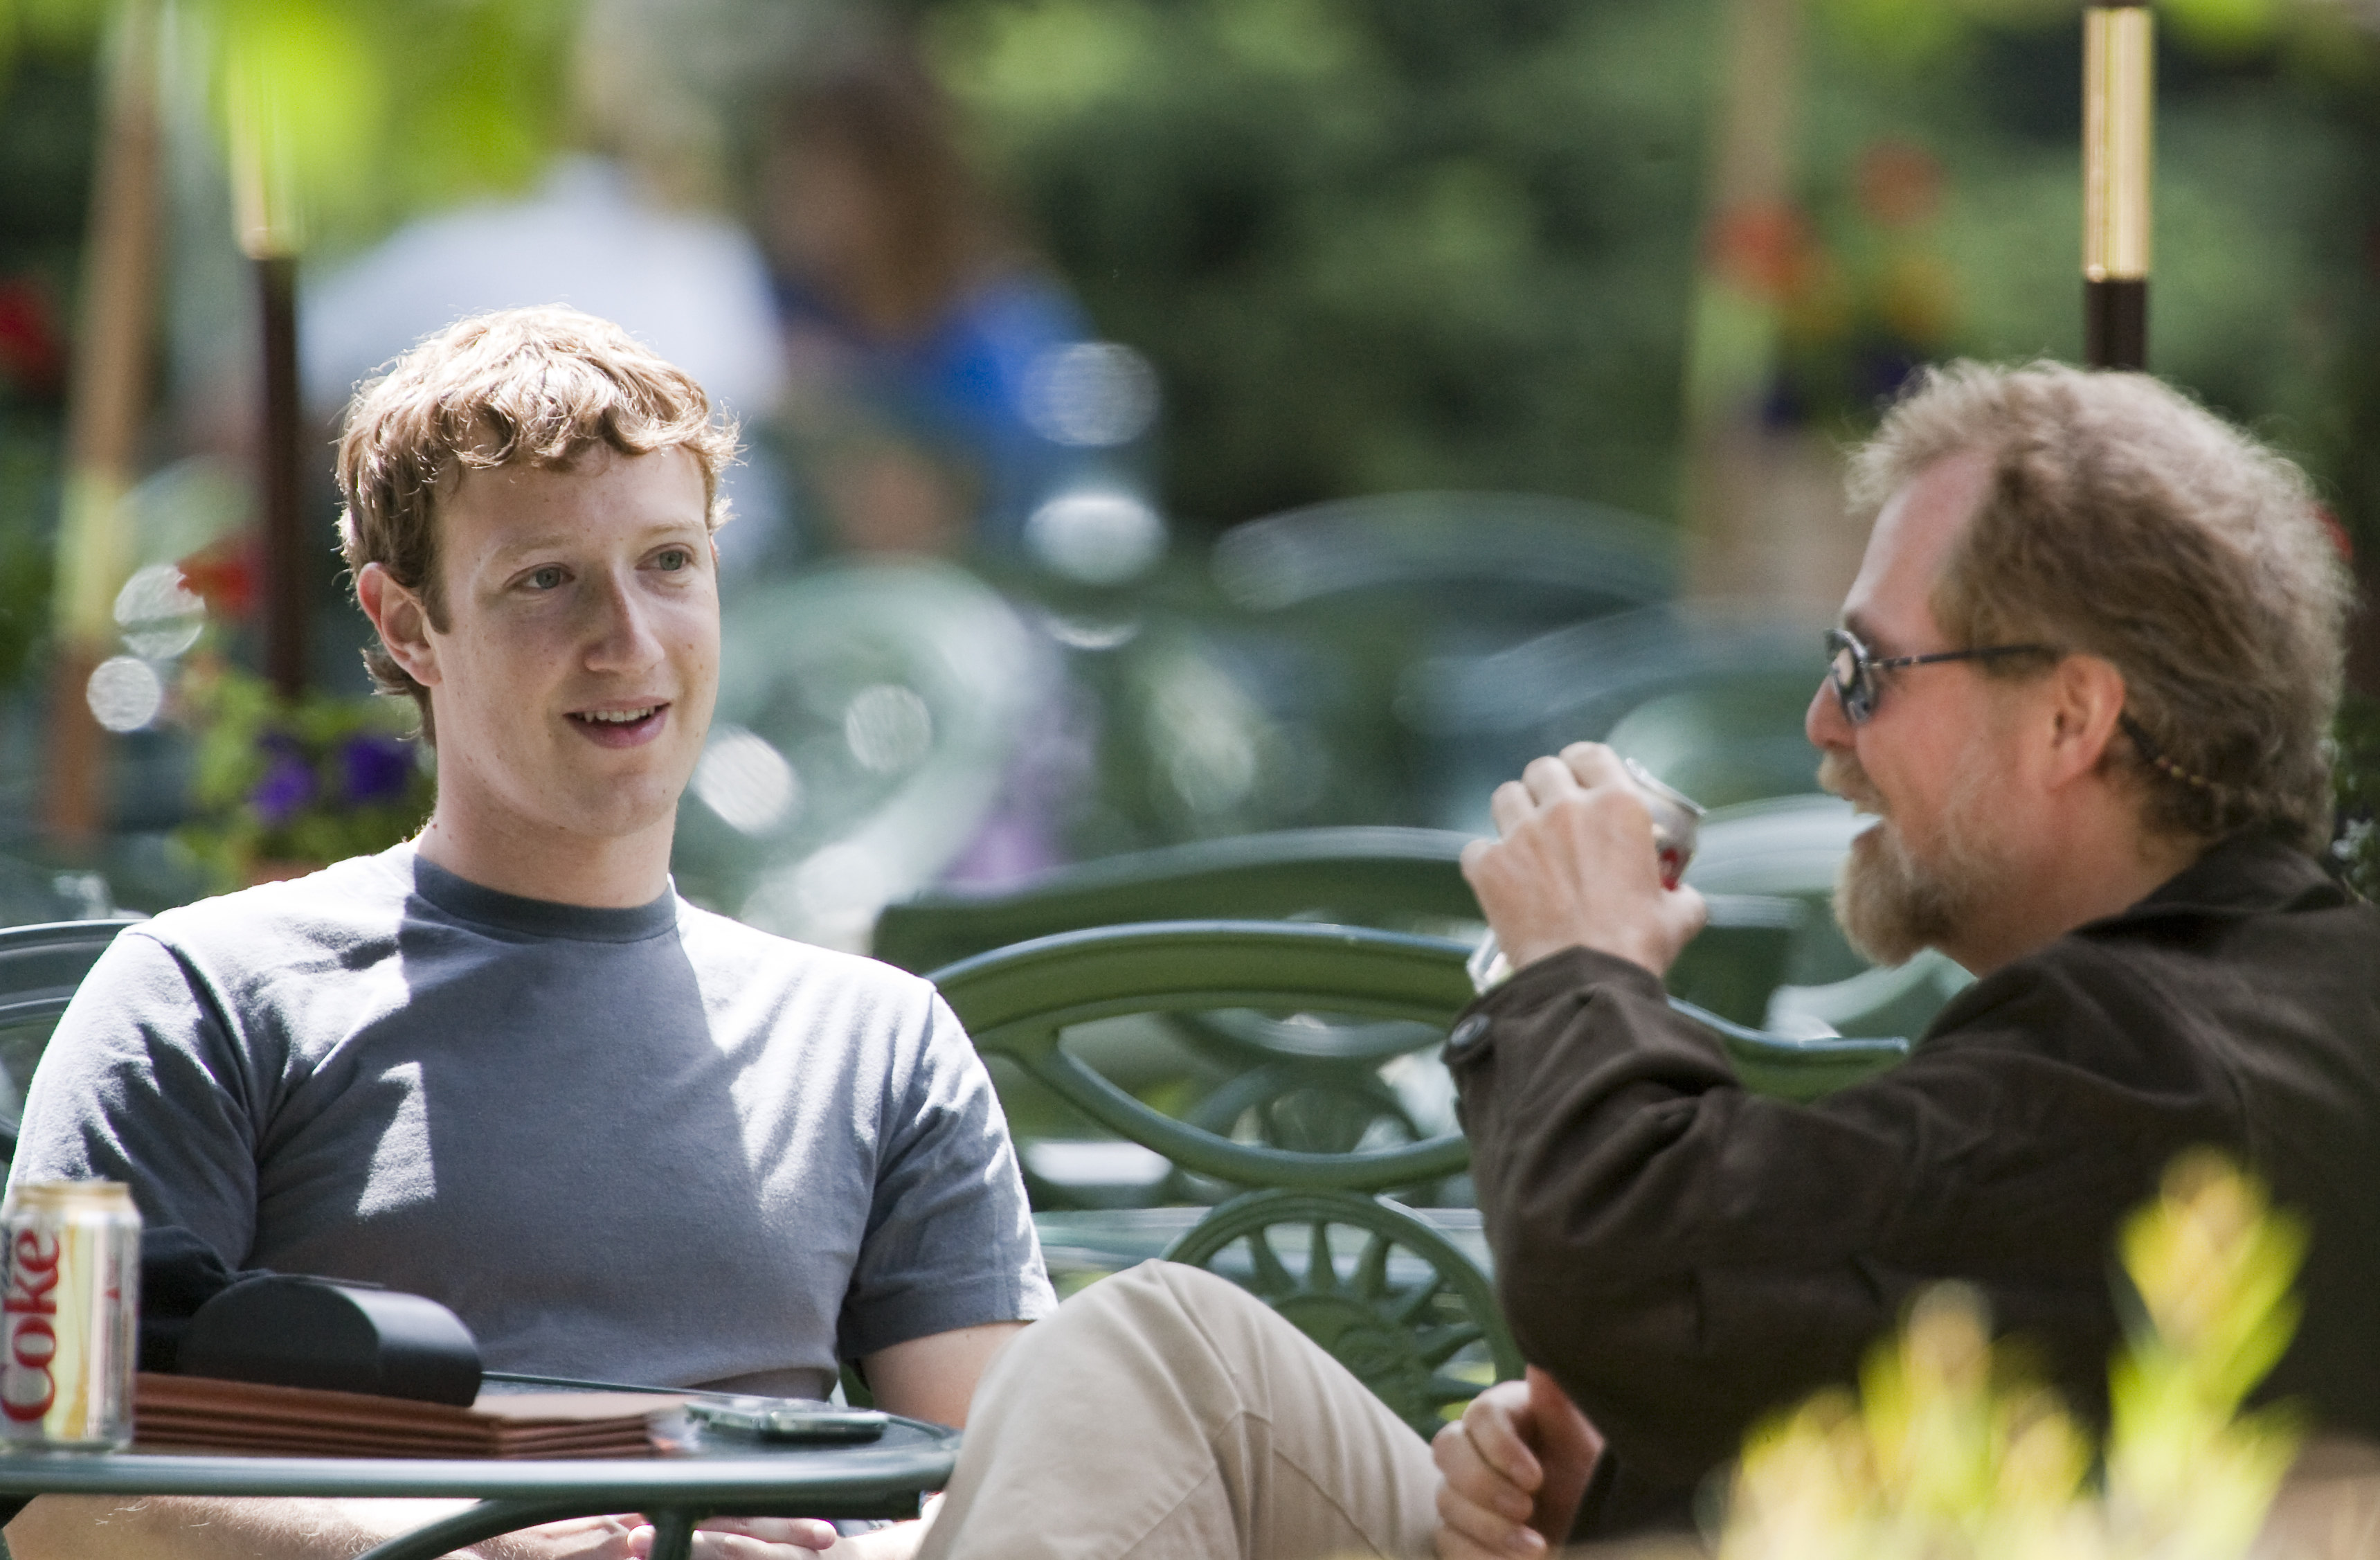 Privatliv, Integritet, Mark Zuckerberg, Facebook, Censur